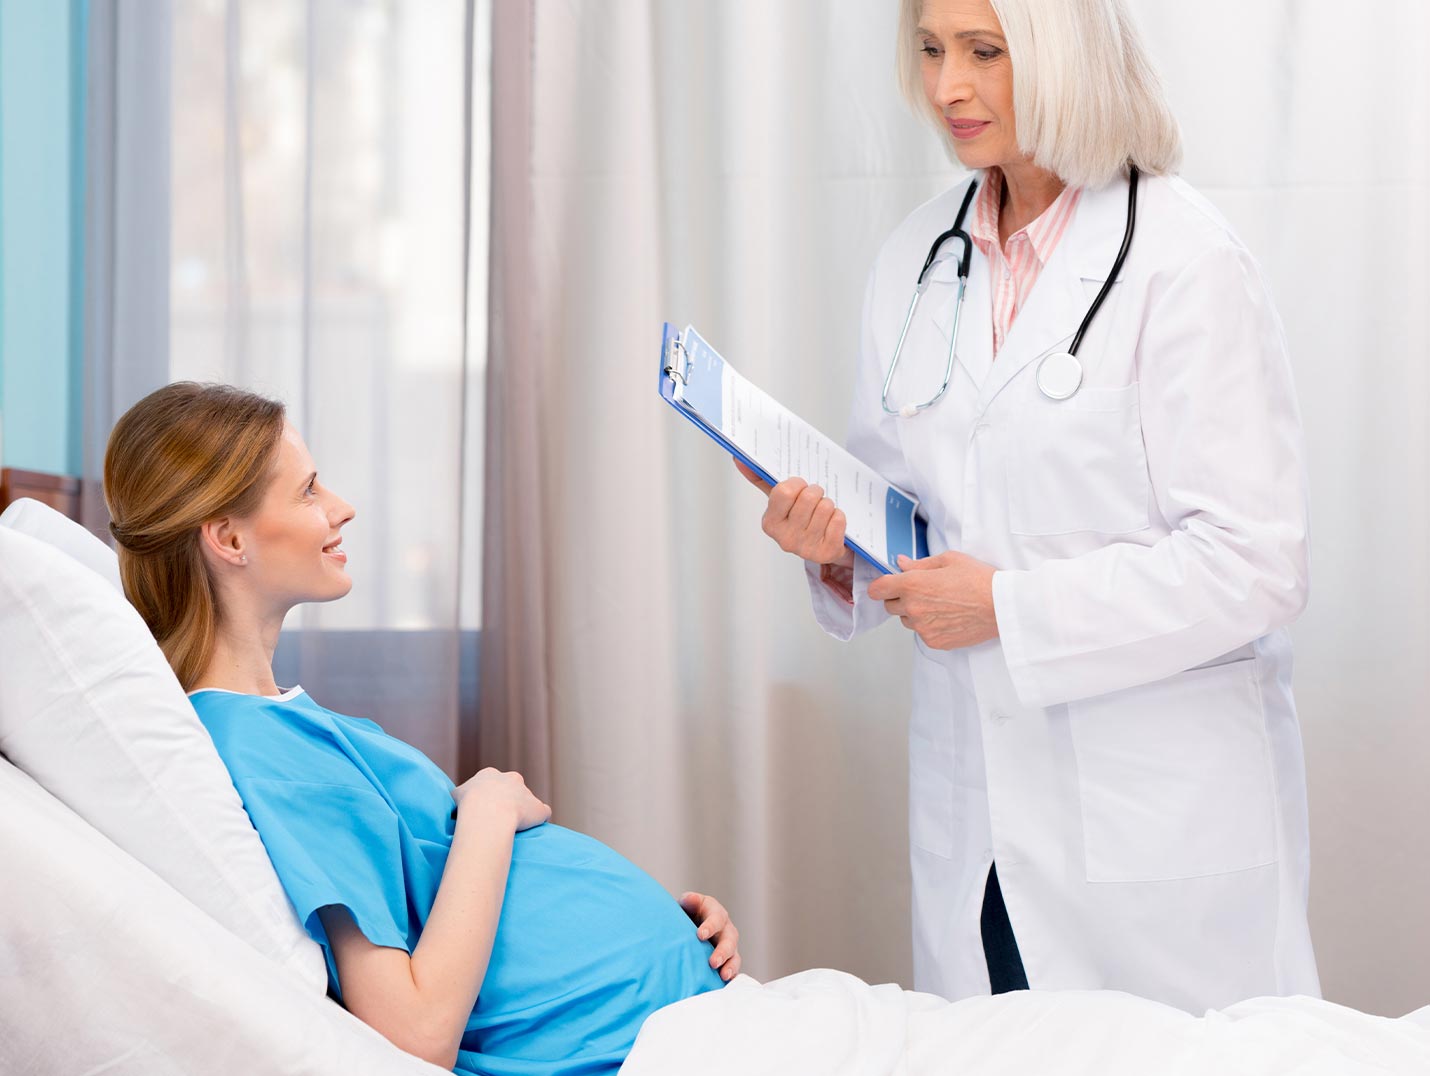 Doctora con bata blanca dando indicaciones a una paciente embaraza que está recostada en una cama hospitalaria